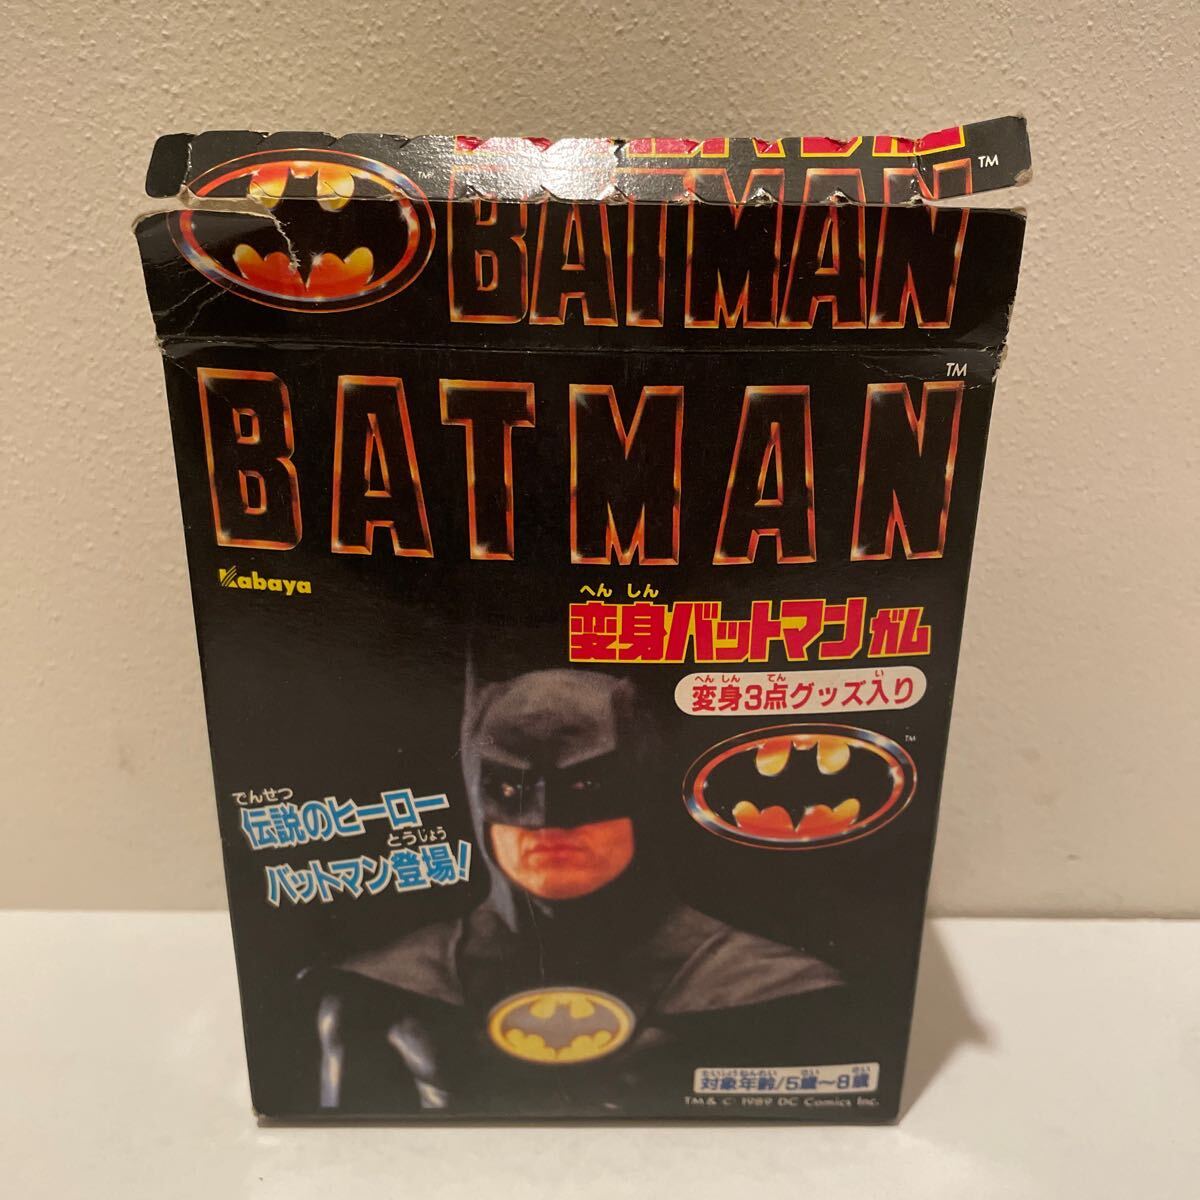 バットマン BATMAN 変身バットマンガム 開封済み カバヤ_画像1